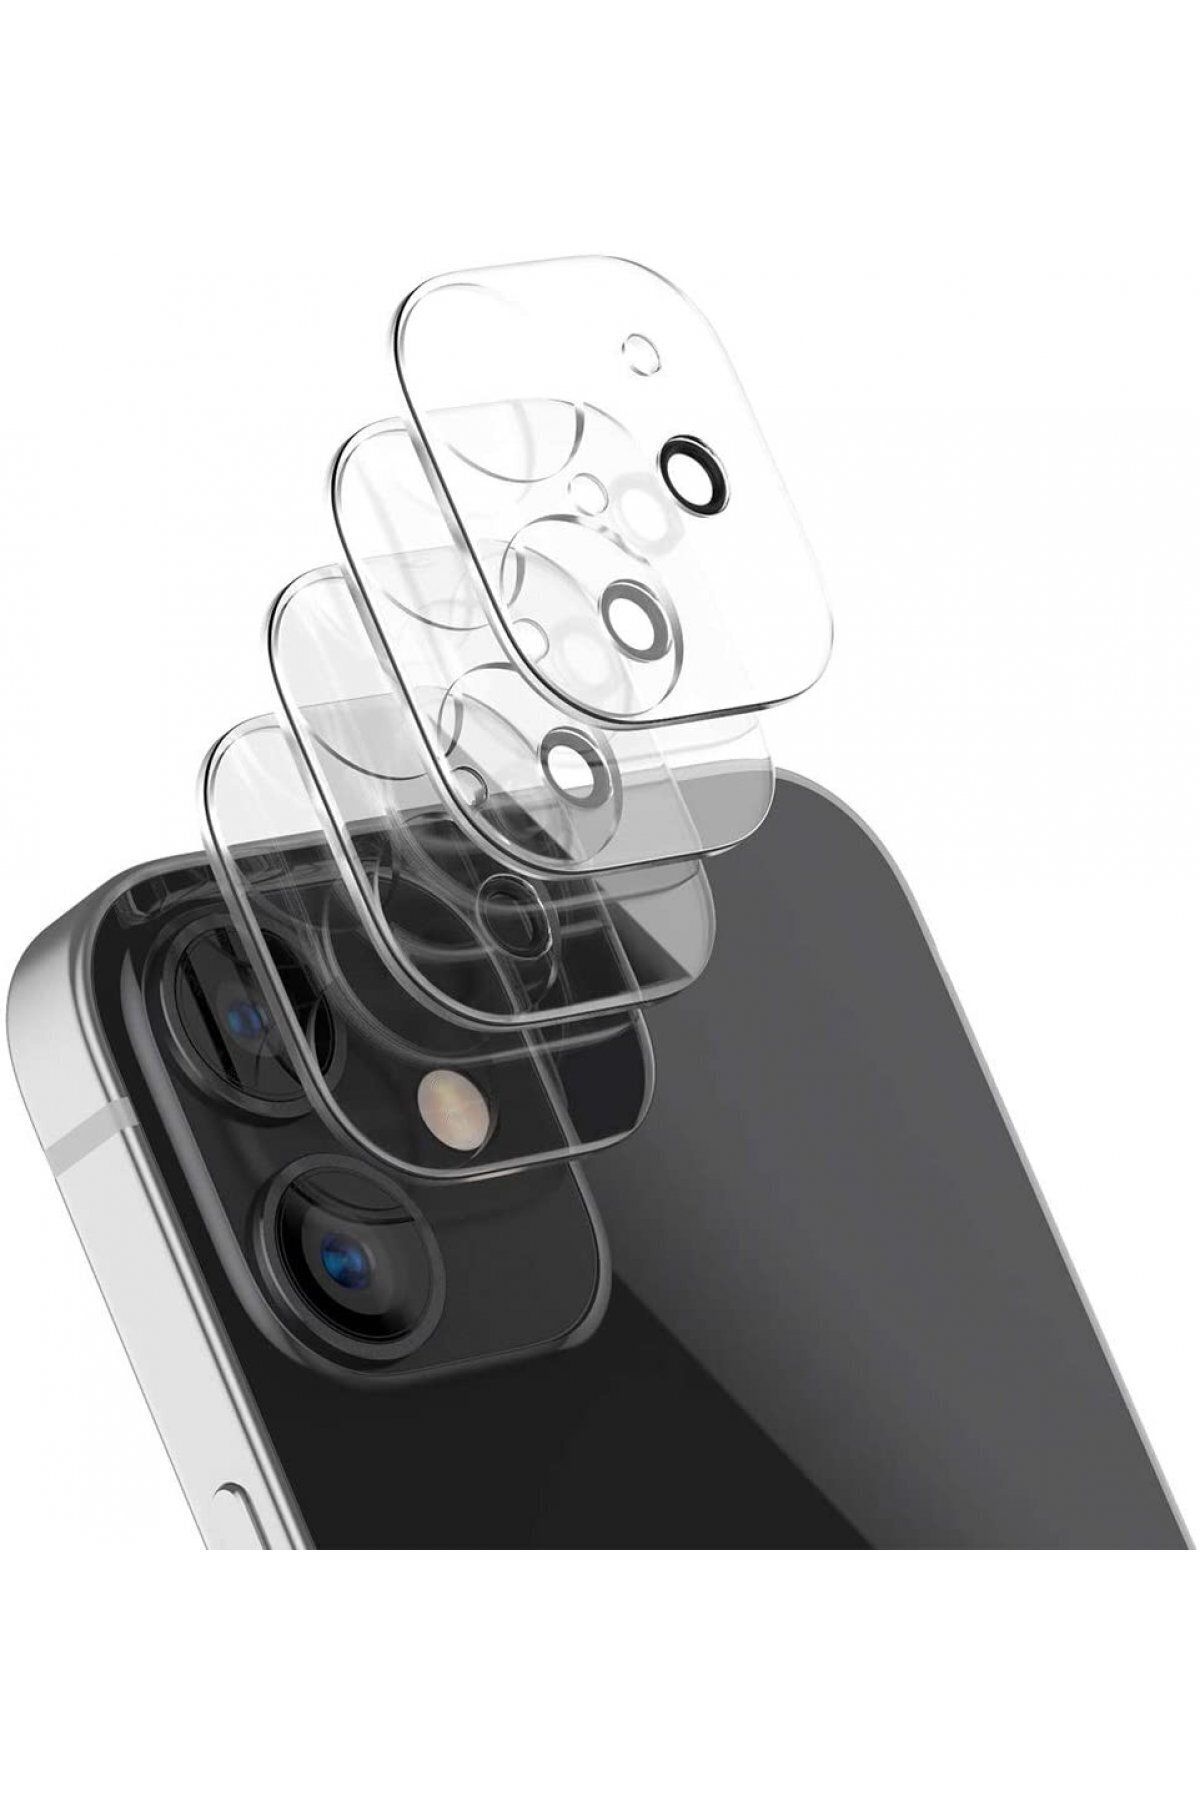 NewFace iPhone 11 Pro Uyumlu Kamera Lens Koruyucu 9H Cam - Şeffaf AntiŞok Kamera Bölümü Koruyucu